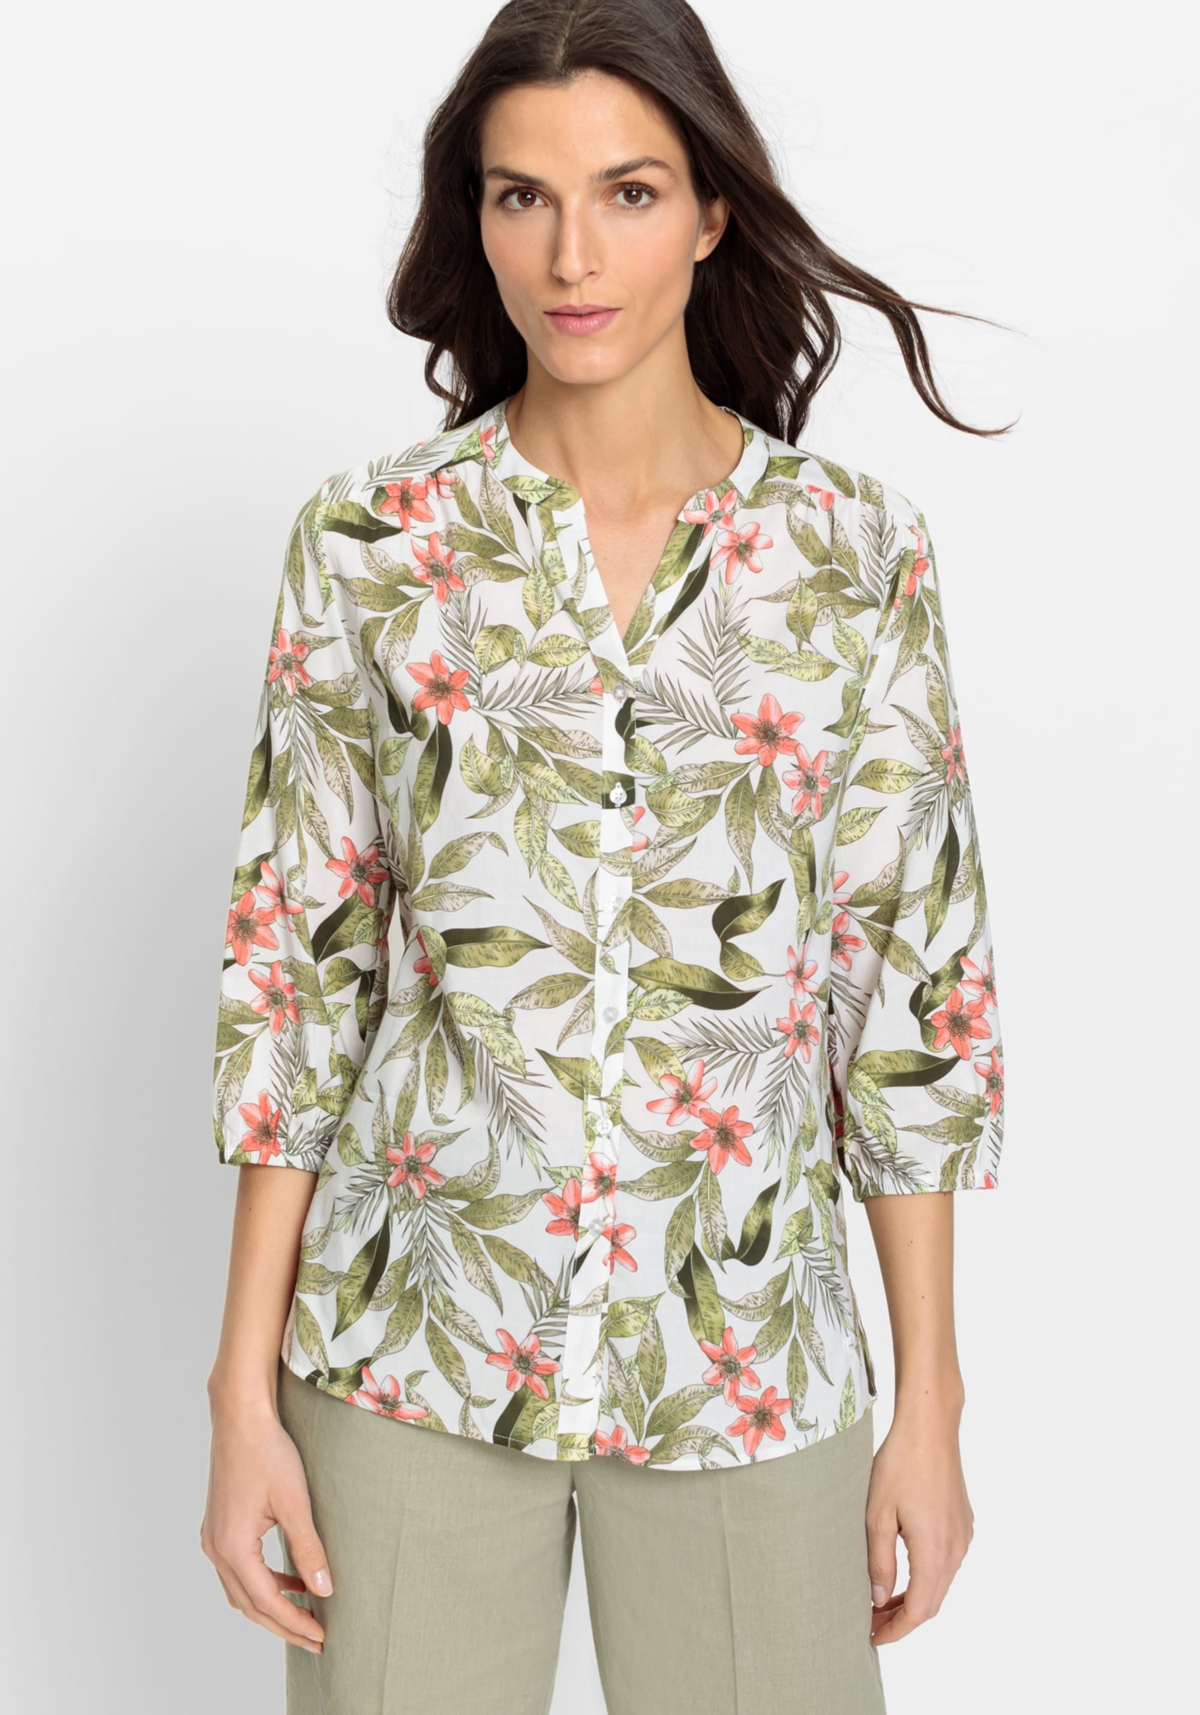 Women's 3/4 Cotton Viscose Tropic Jungle Print Tunic Shirt - Light khaki